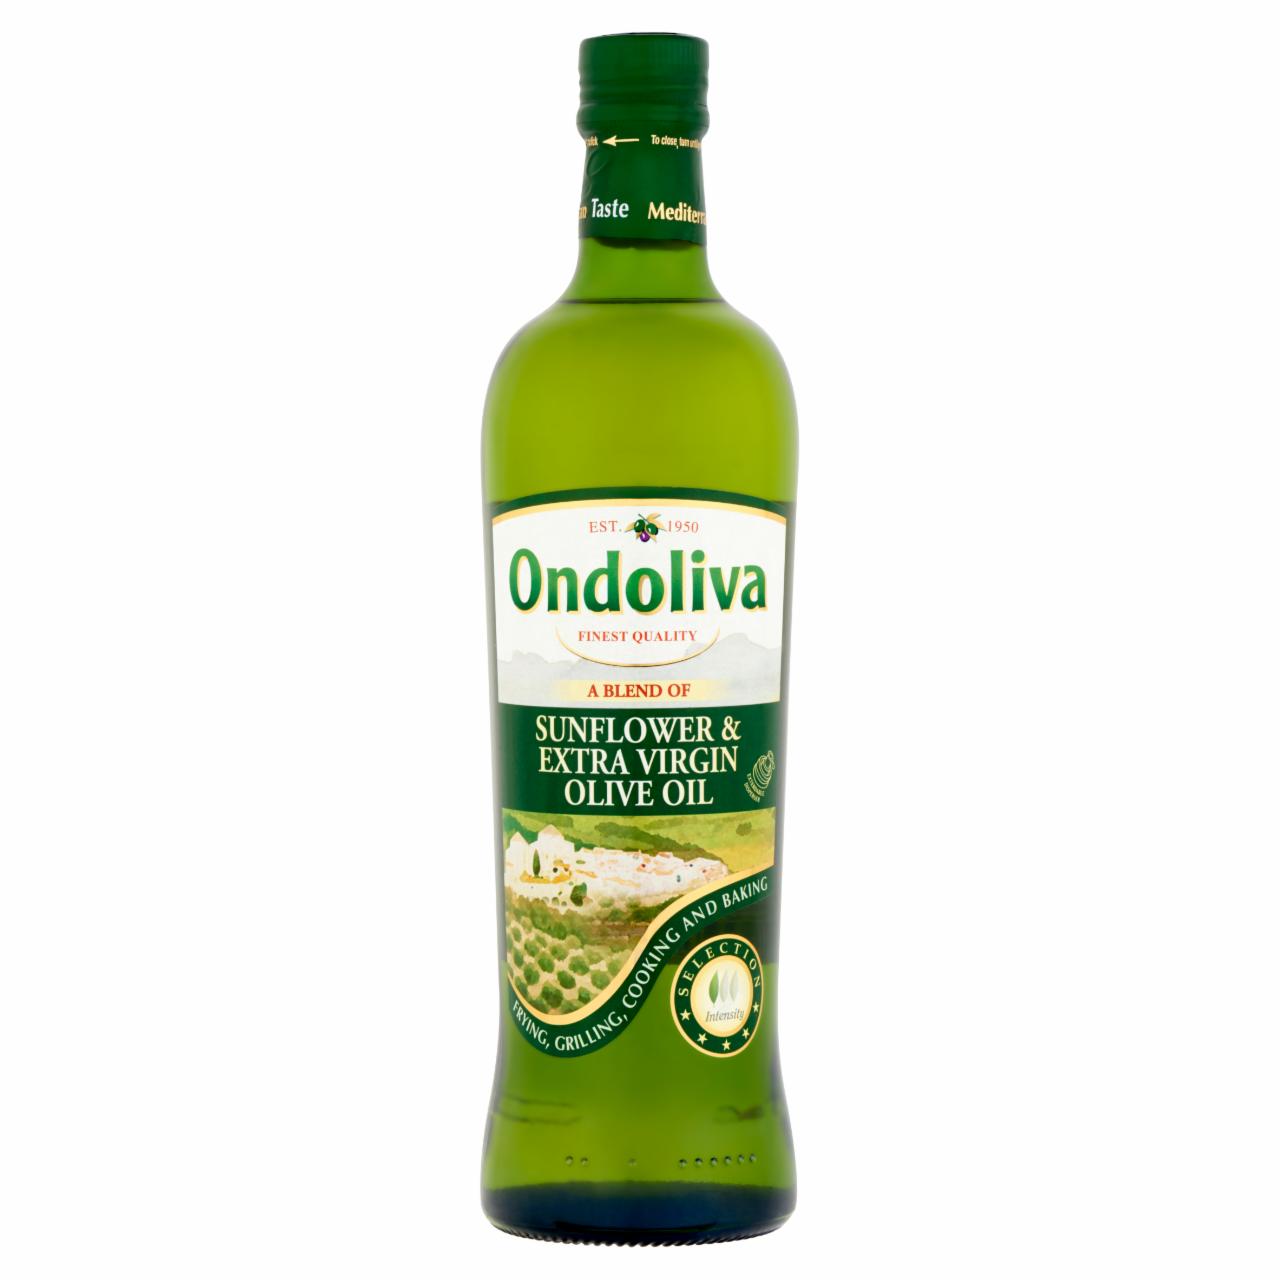 Képek - Ondoliva finomított napraforgóolaj és extraszűz olívaolaj keveréke 750 ml